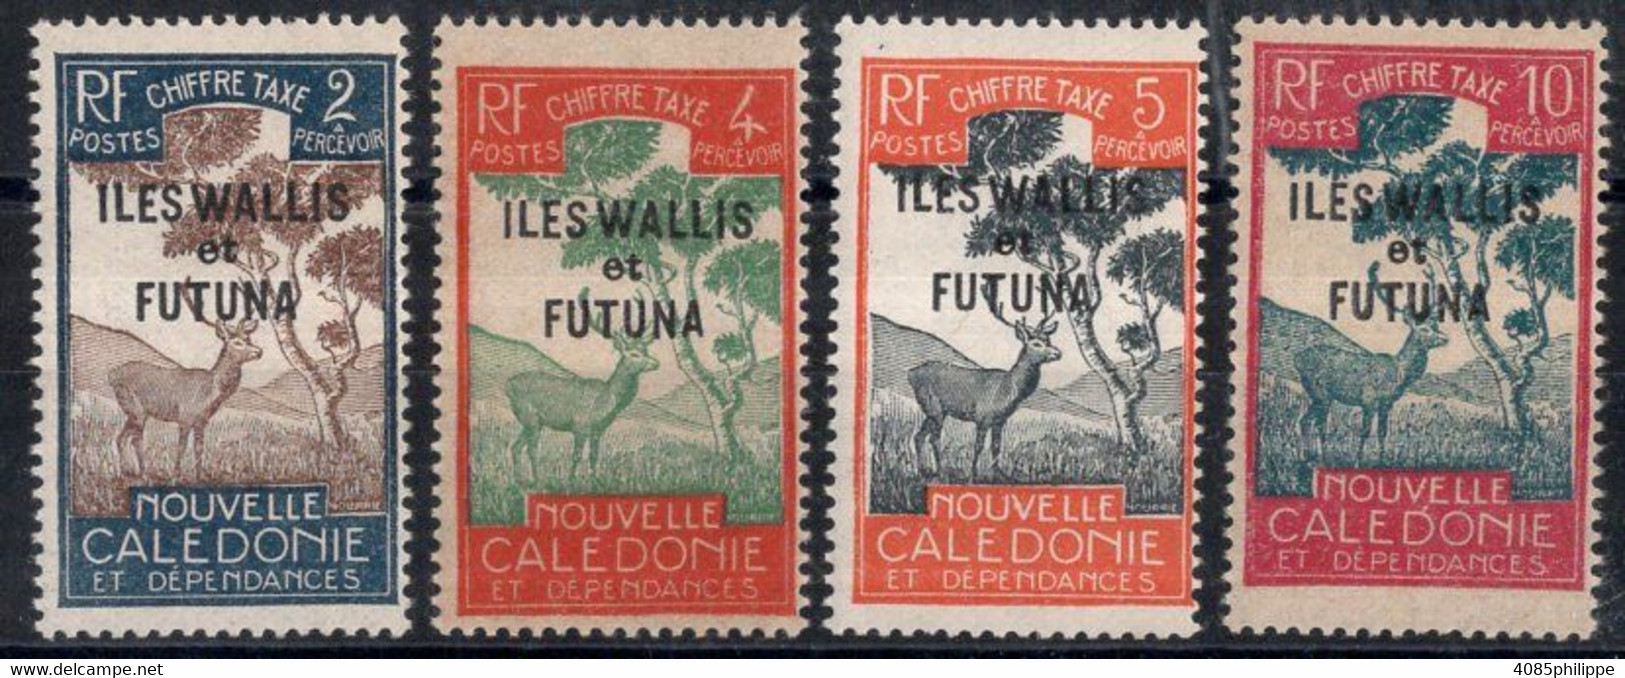 Wallis & Futuna Timbres-Taxe N°11 à 14** Neufs Sans Charnières TB Cote 3.50€ - Impuestos